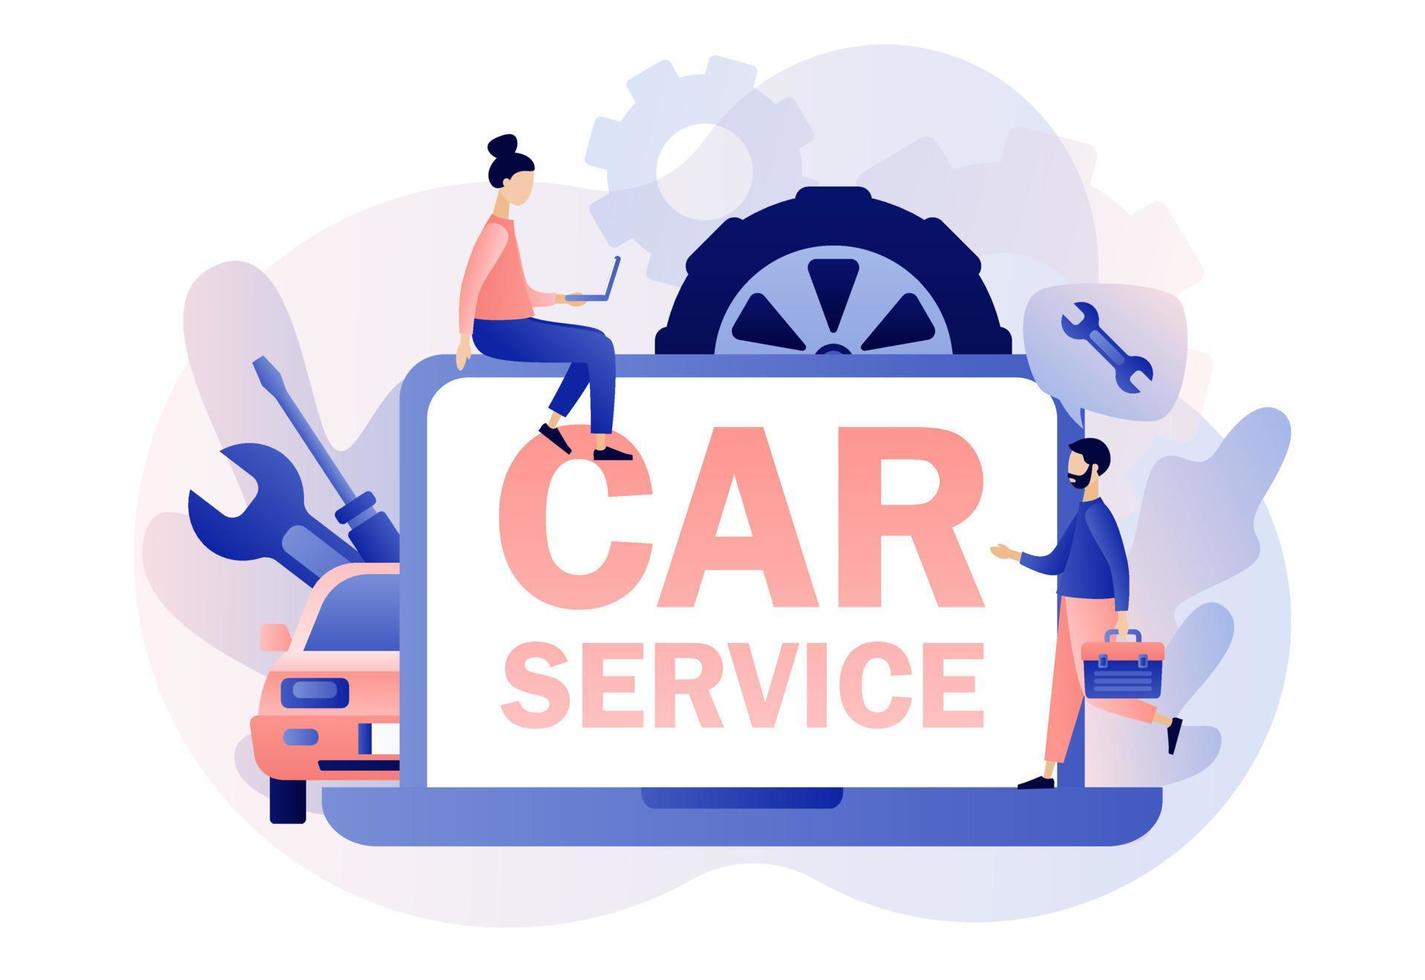 bil service och reparera webb webbplats. bil service begrepp. mycket liten reparatör, mekanik tecken i enhetlig med verktyg och däck. modern platt tecknad serie stil. vektor illustration på vit bakgrund